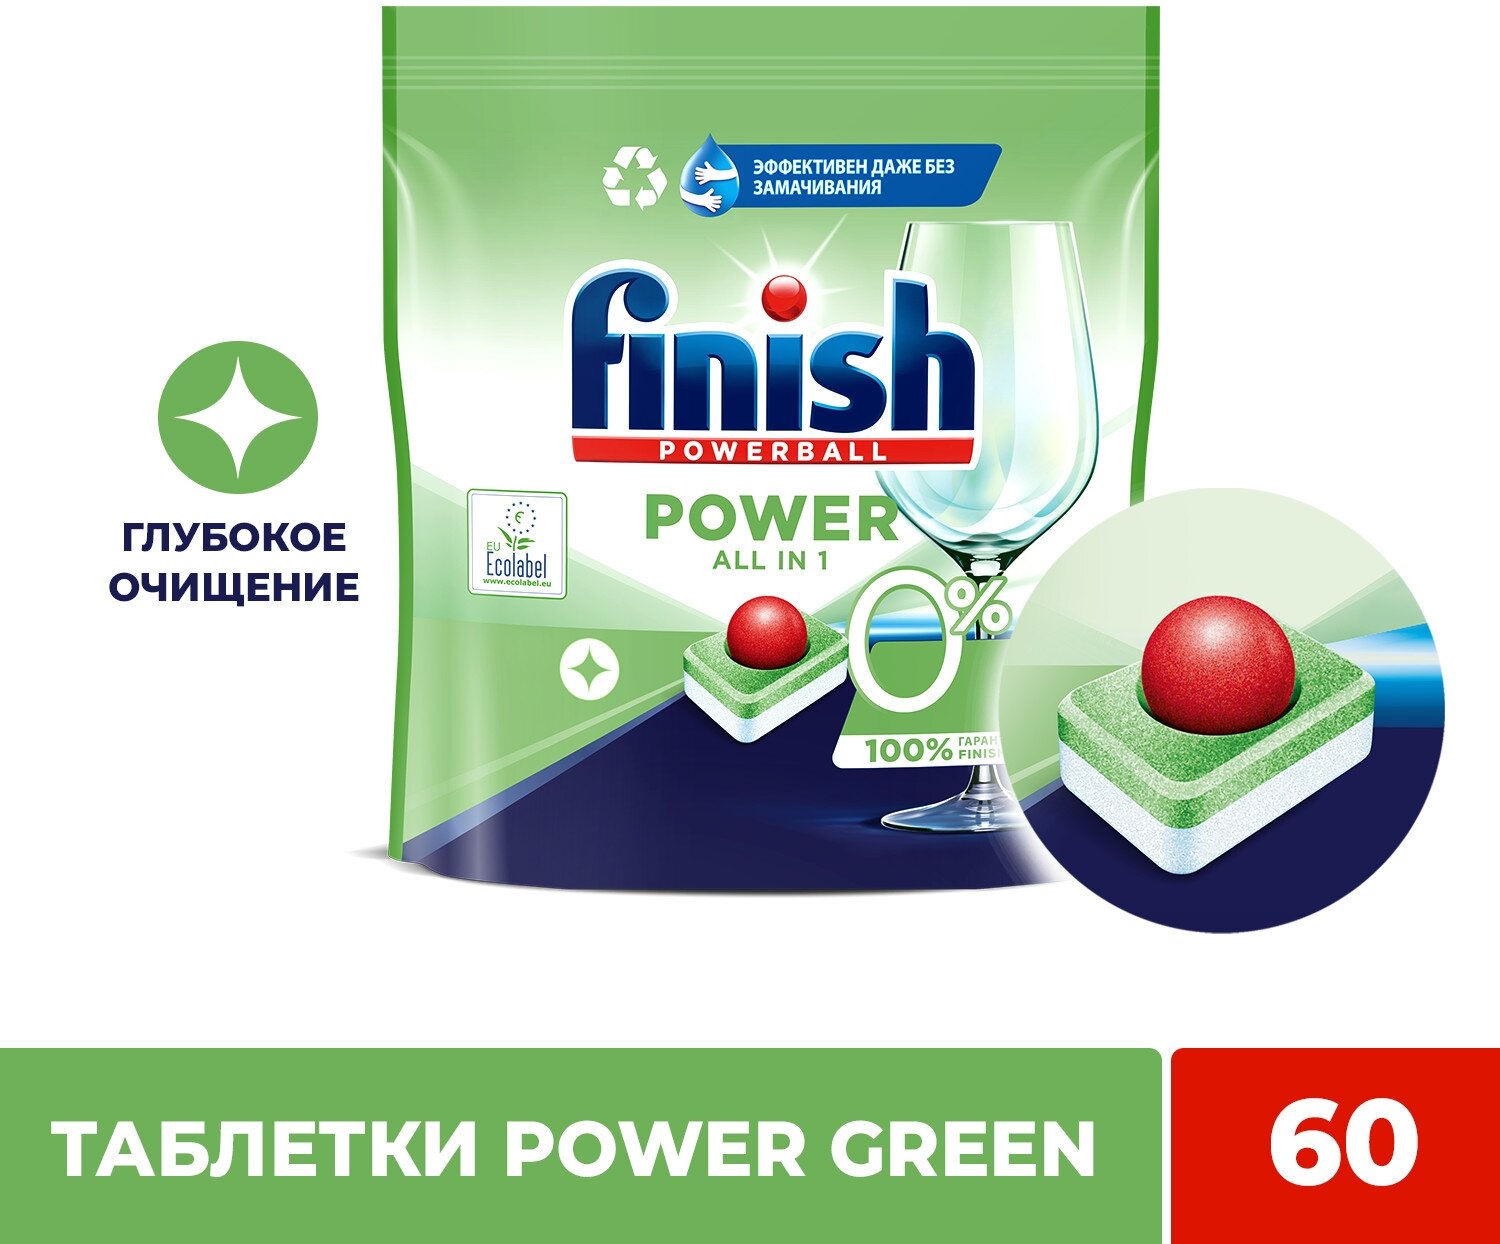 Таблетки для посудомоечной машины Finish Green 0% фосфатов